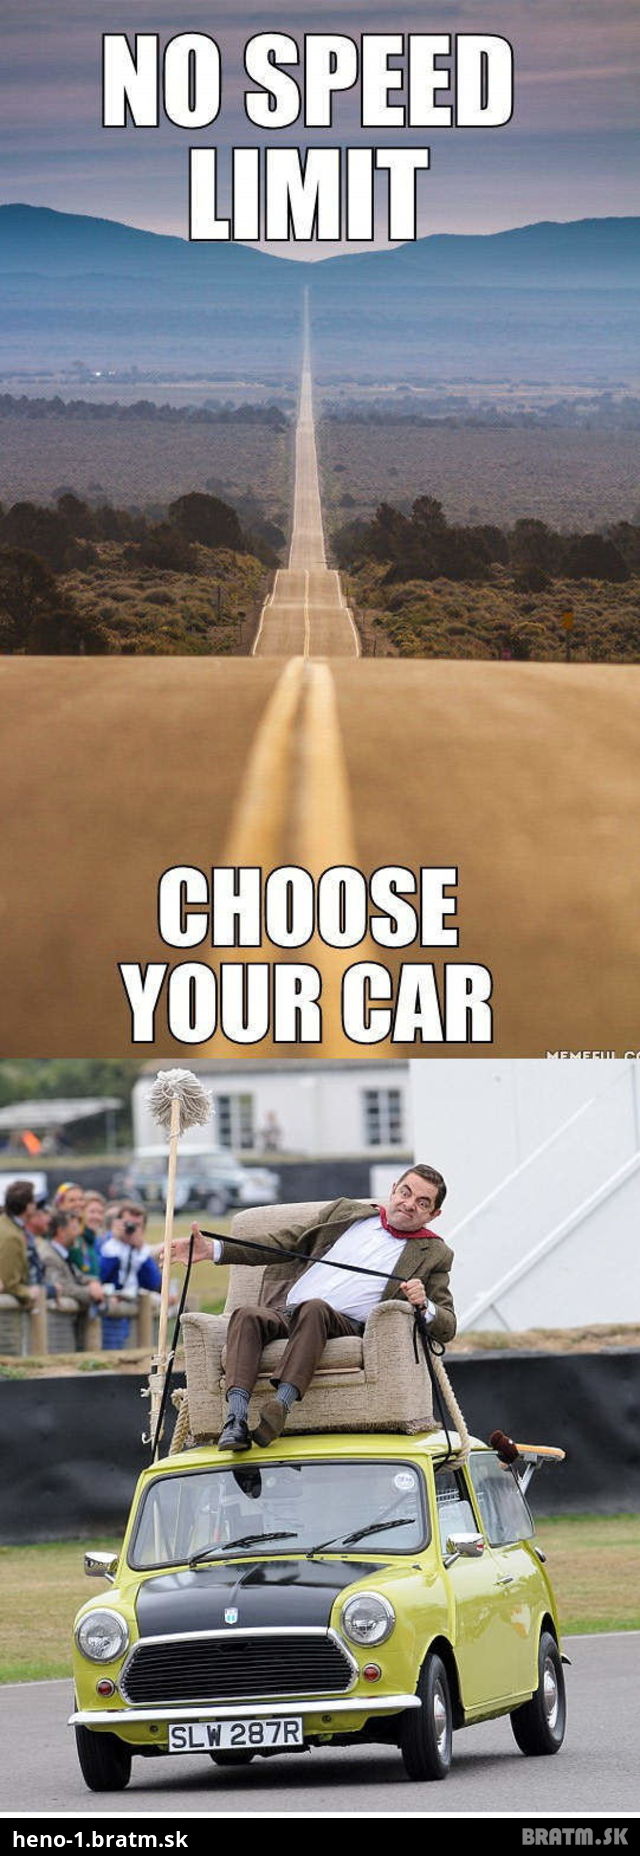 Tomuto sa povie výzva! Aké auto by ste volili vy?